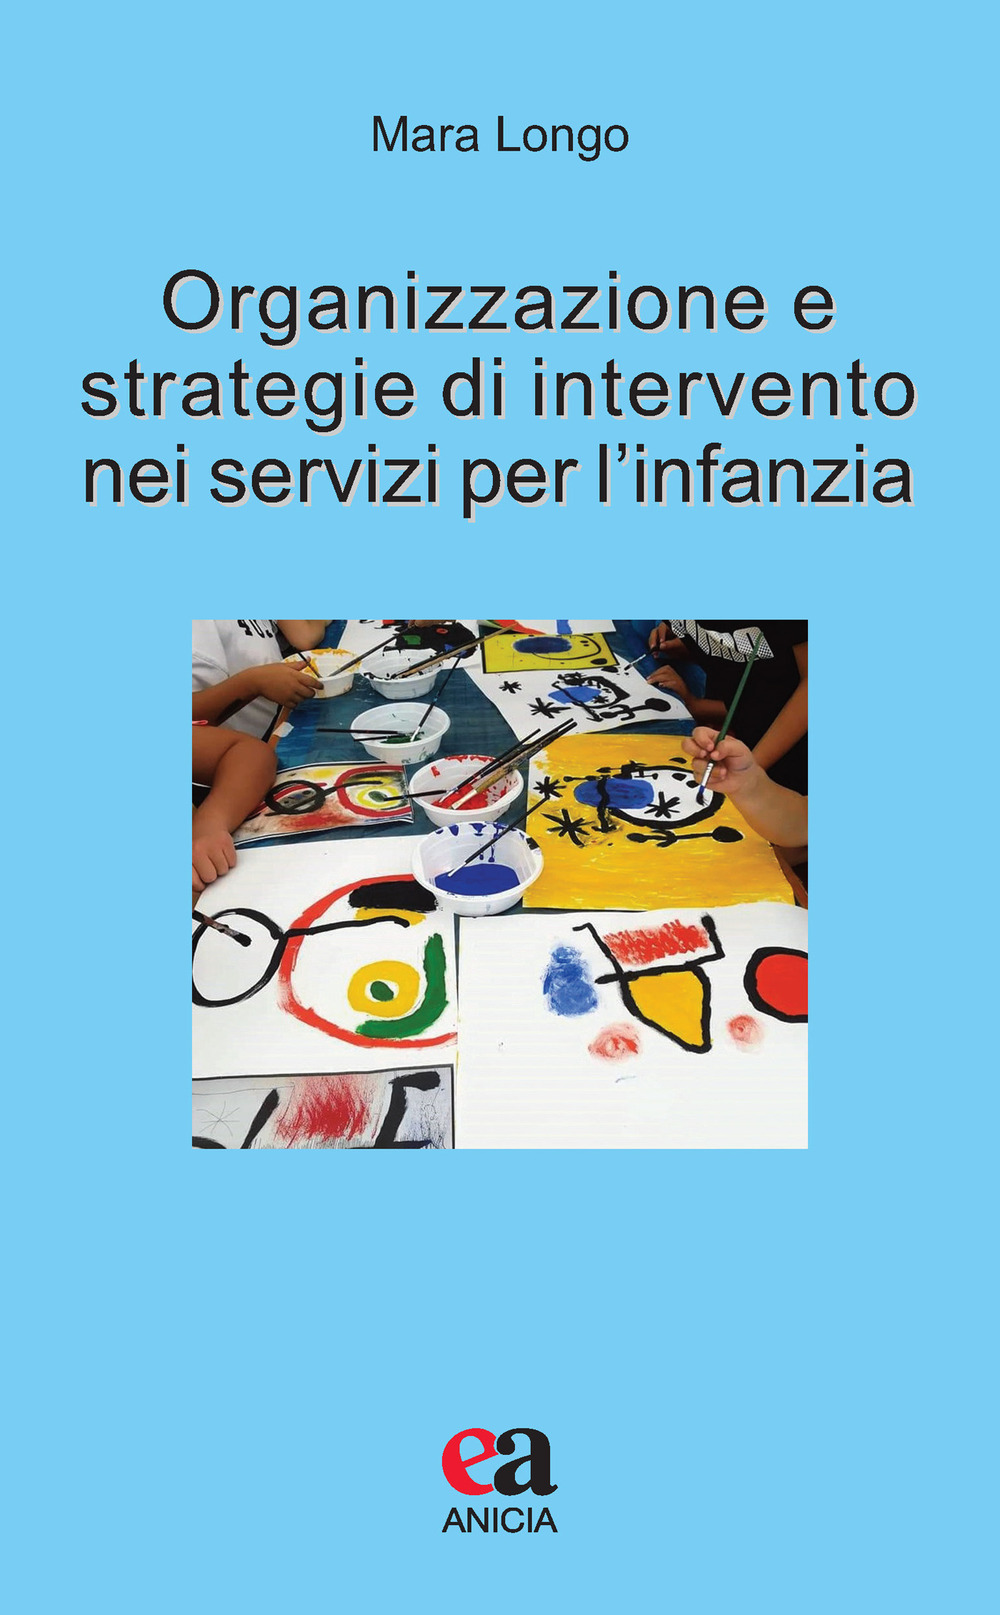 Image of Organizzazione e strategie di intervento nei servizi per l'infanzia